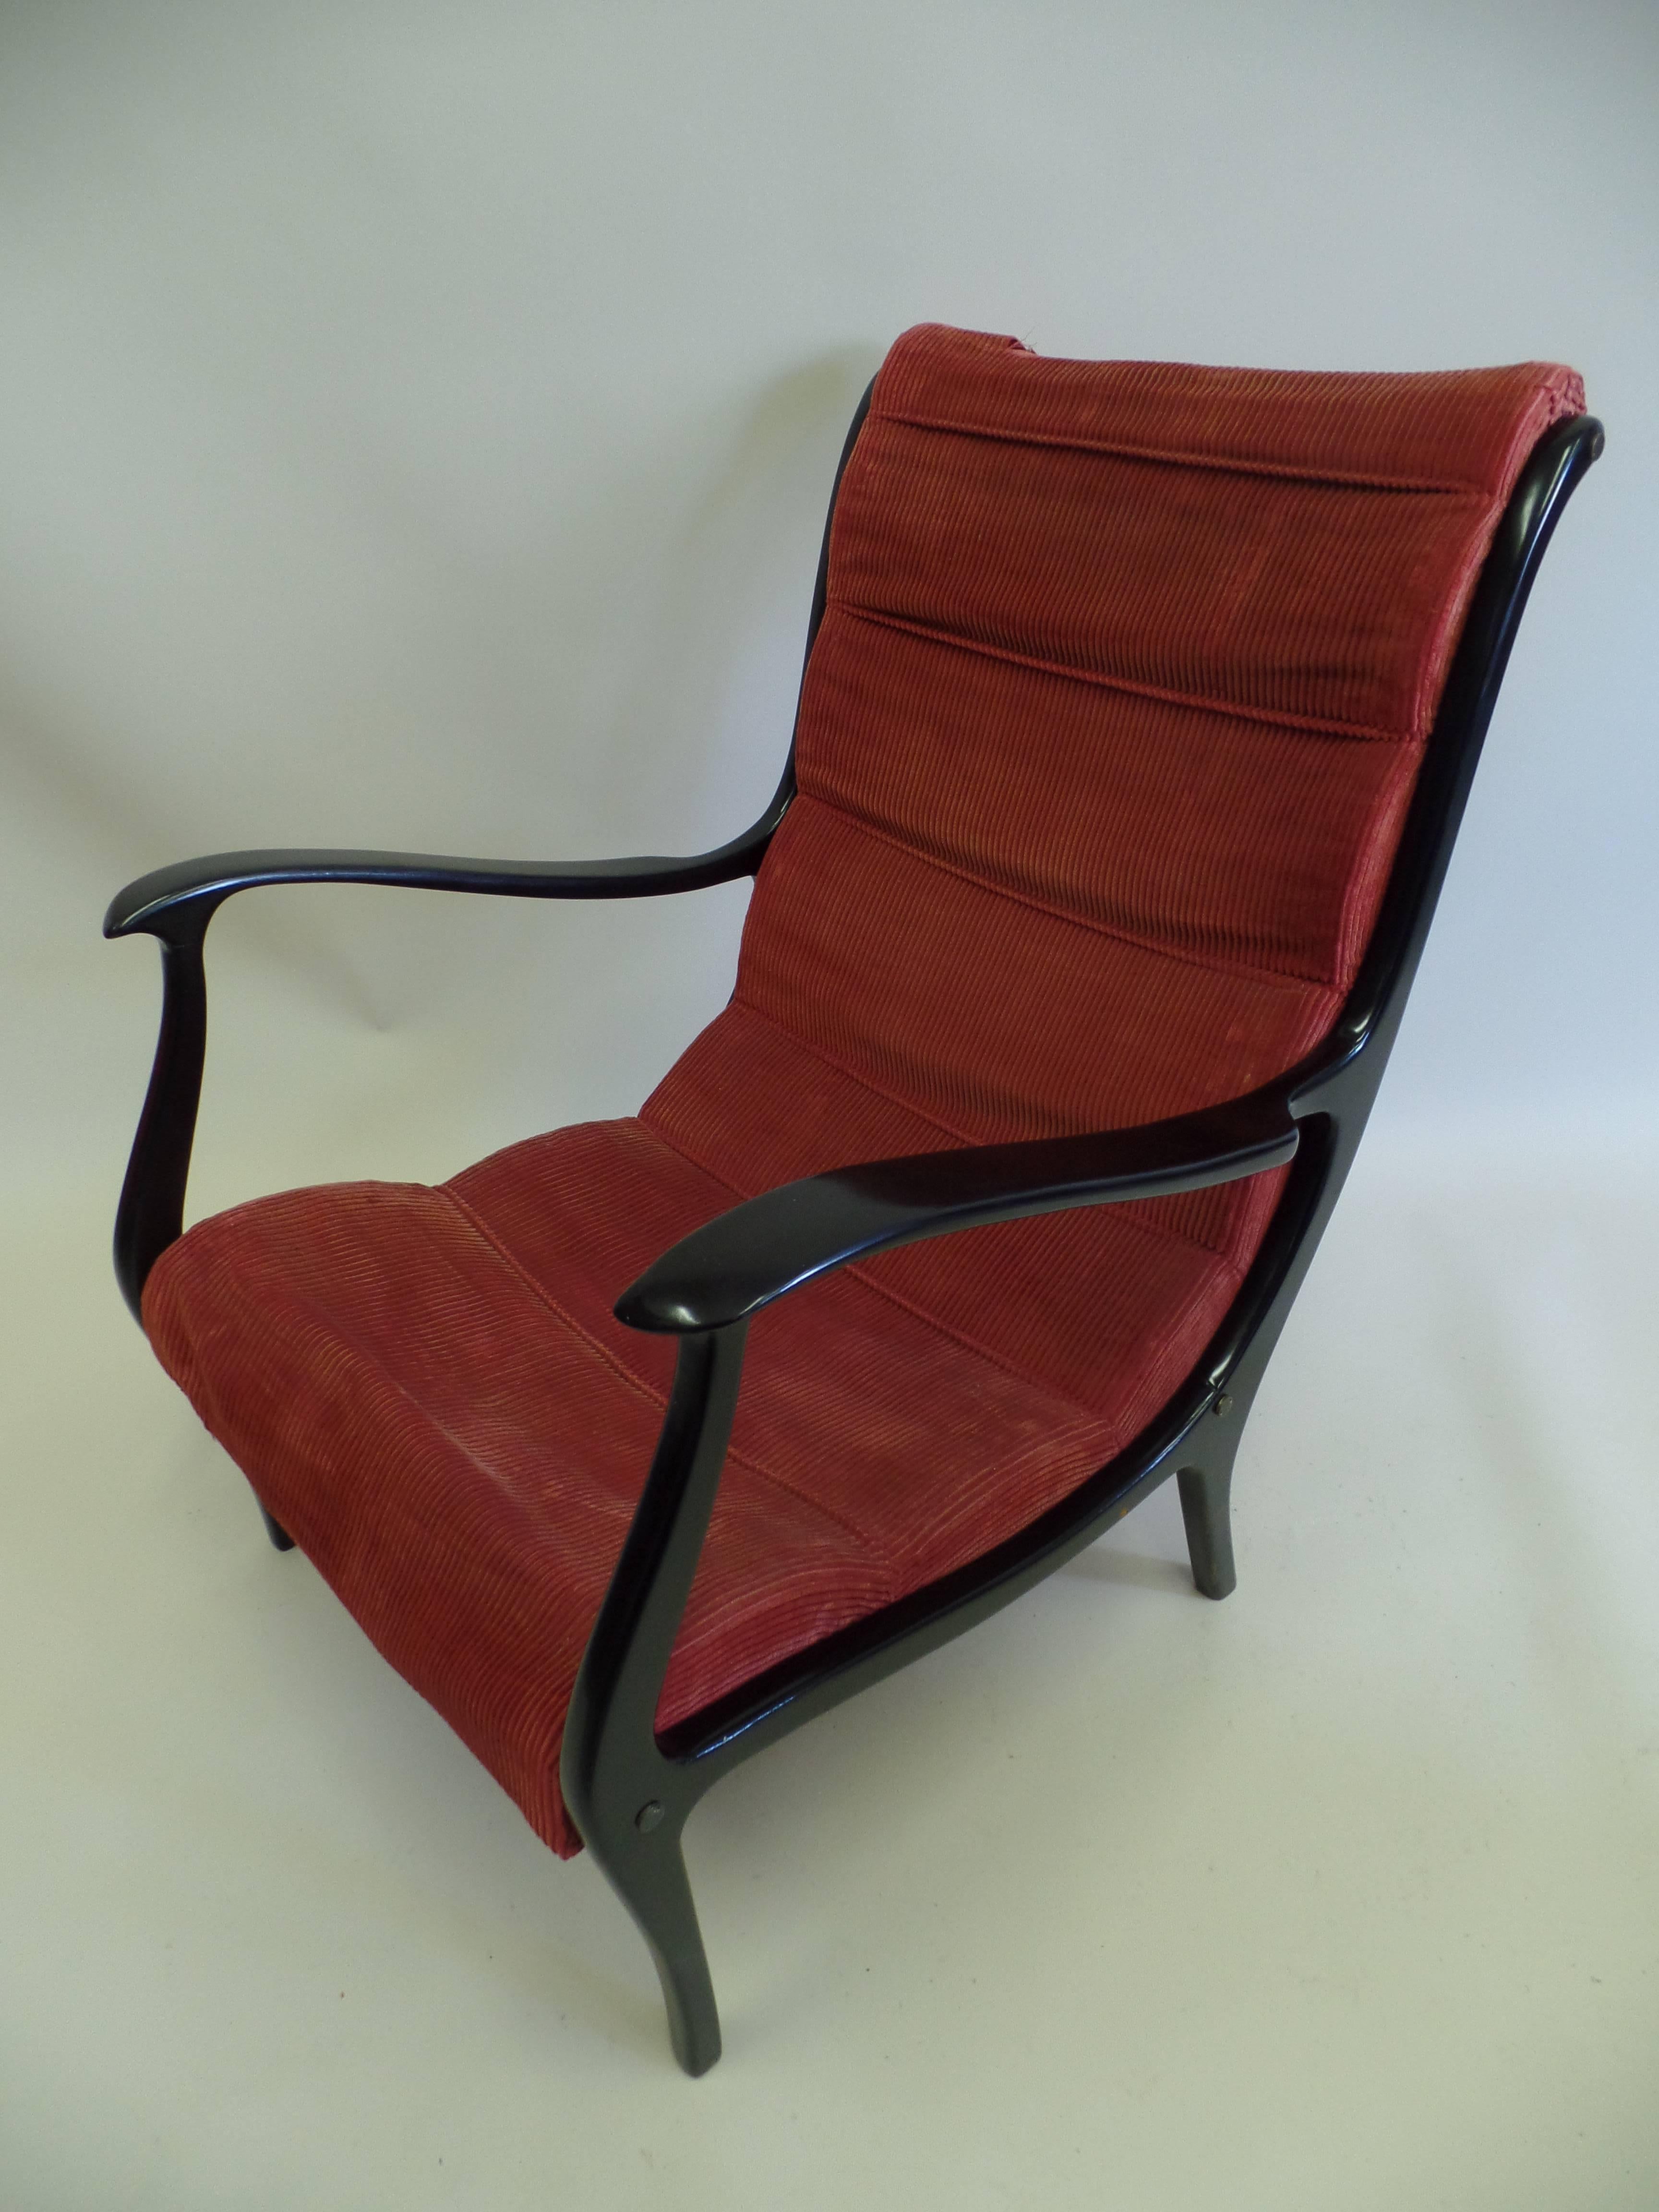 Ein elegantes Paar italienischer neoklassizistischer Loungesessel oder Sessel im Stil von Gio Ponti. Die Stücke haben eine skulpturale Form mit sanft fließenden Linien und raffinierten Details. Die Linien sind sinnlich und die dunklen Hartholzrahmen